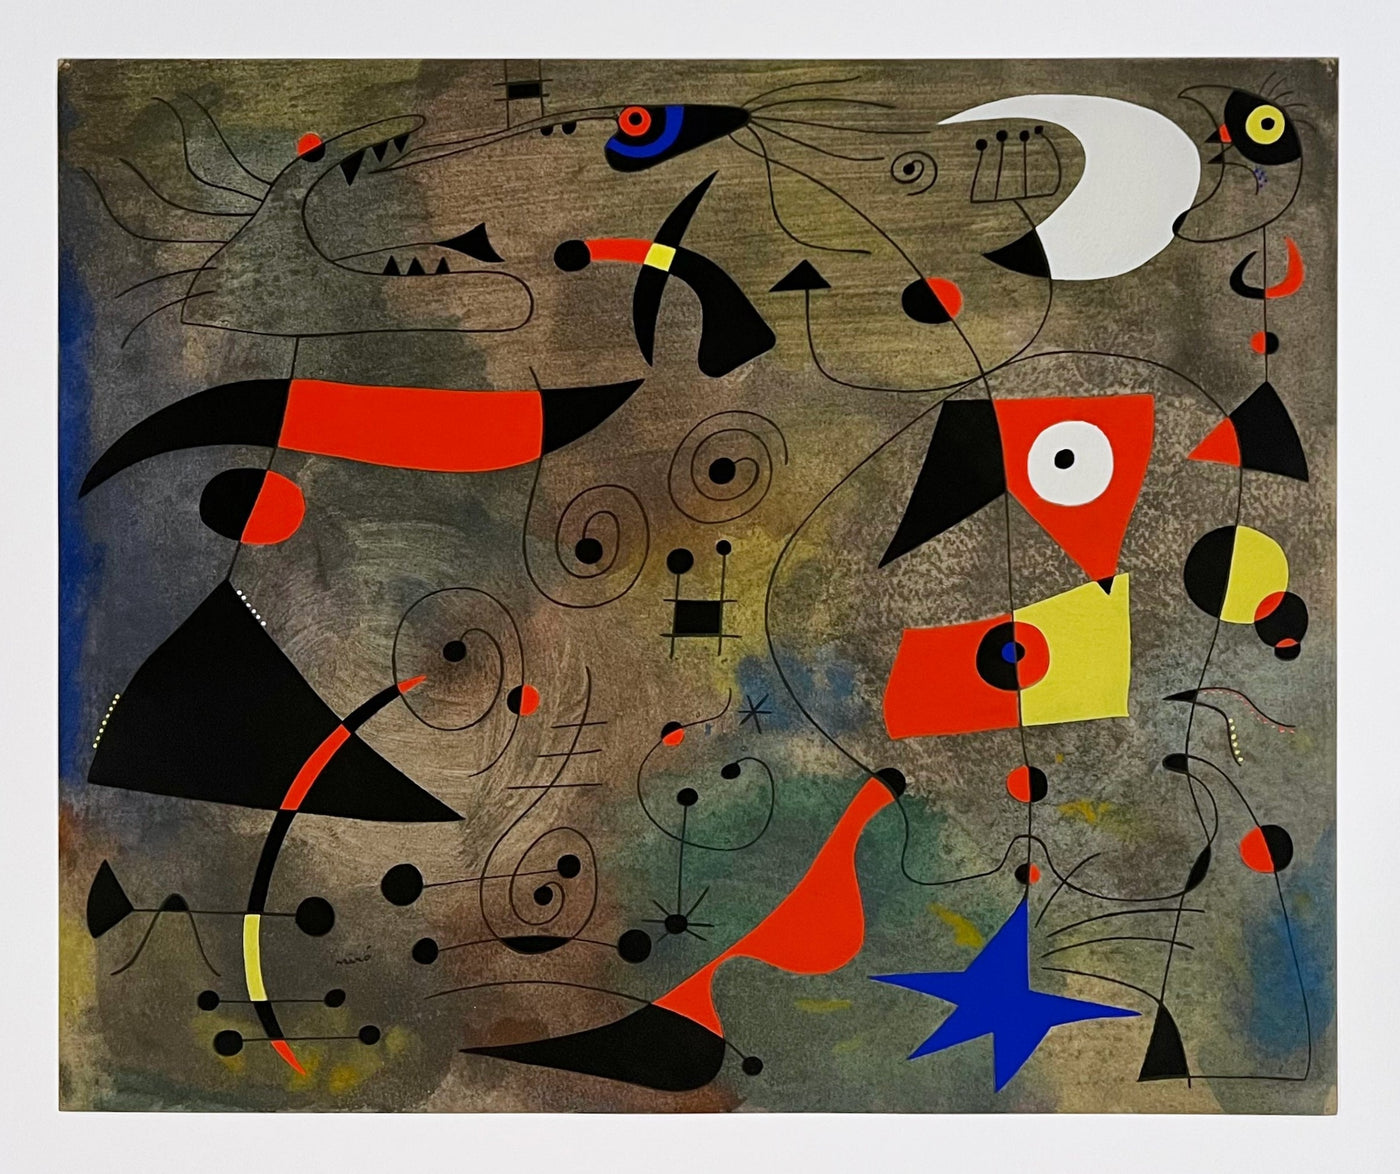 Joan Miro (after) Femme et oiseaux (Woman and Birds), Plate VIII (Cramer No. 58) 1959